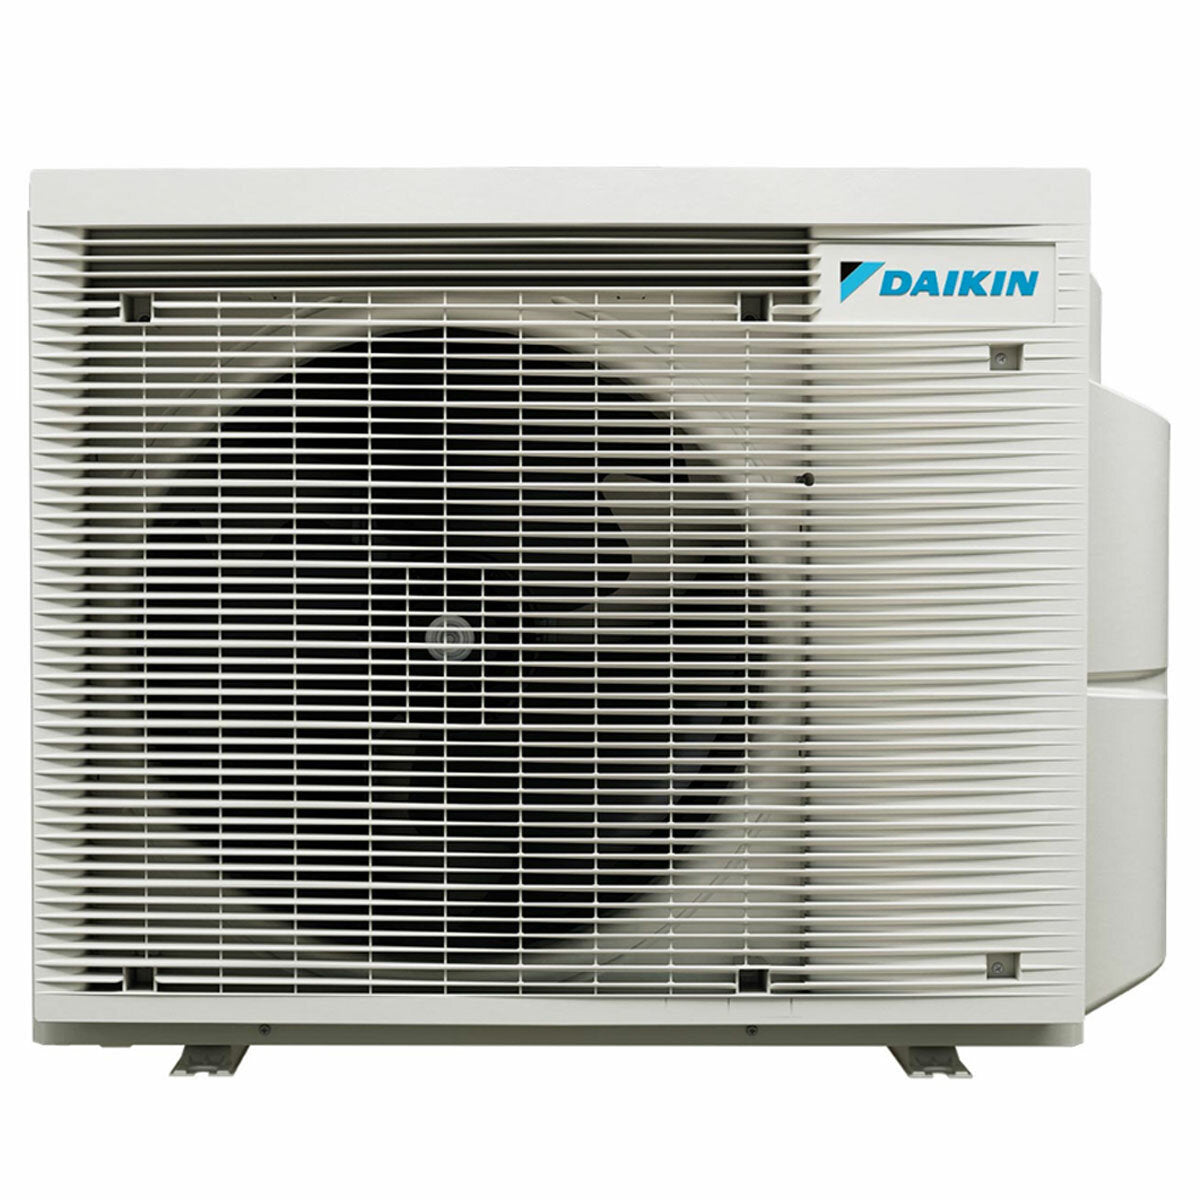 Daikin Stylish White trial split air conditioner 9000+12000+12000 BTU inverter A++ wifi external unit 6.8 kW